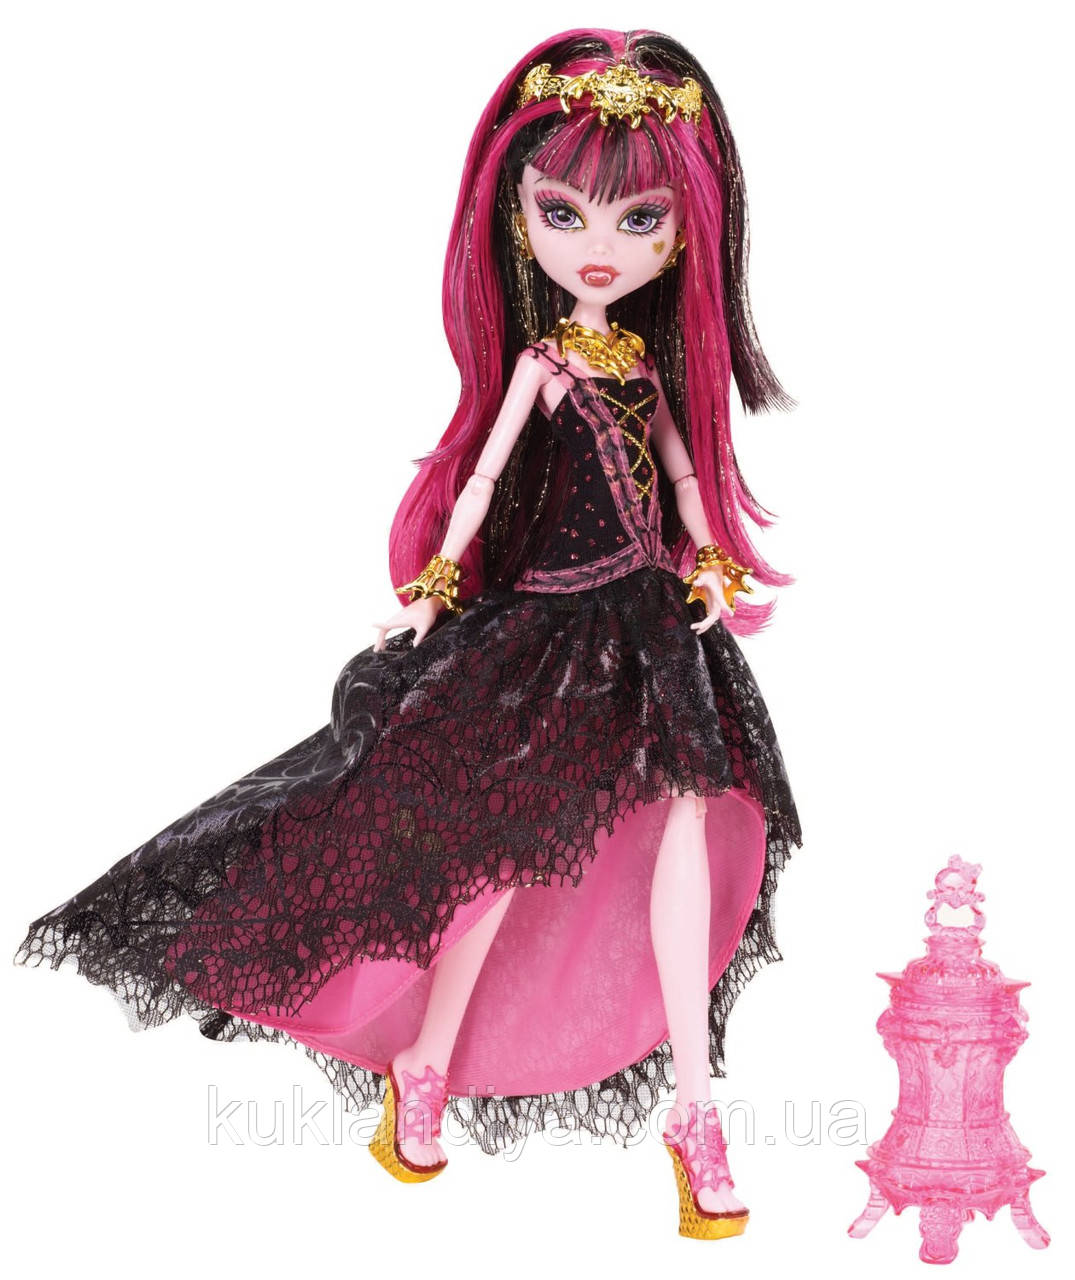 Monster High купить куклы в Украине, Киеве по самым привлекательным ценам!